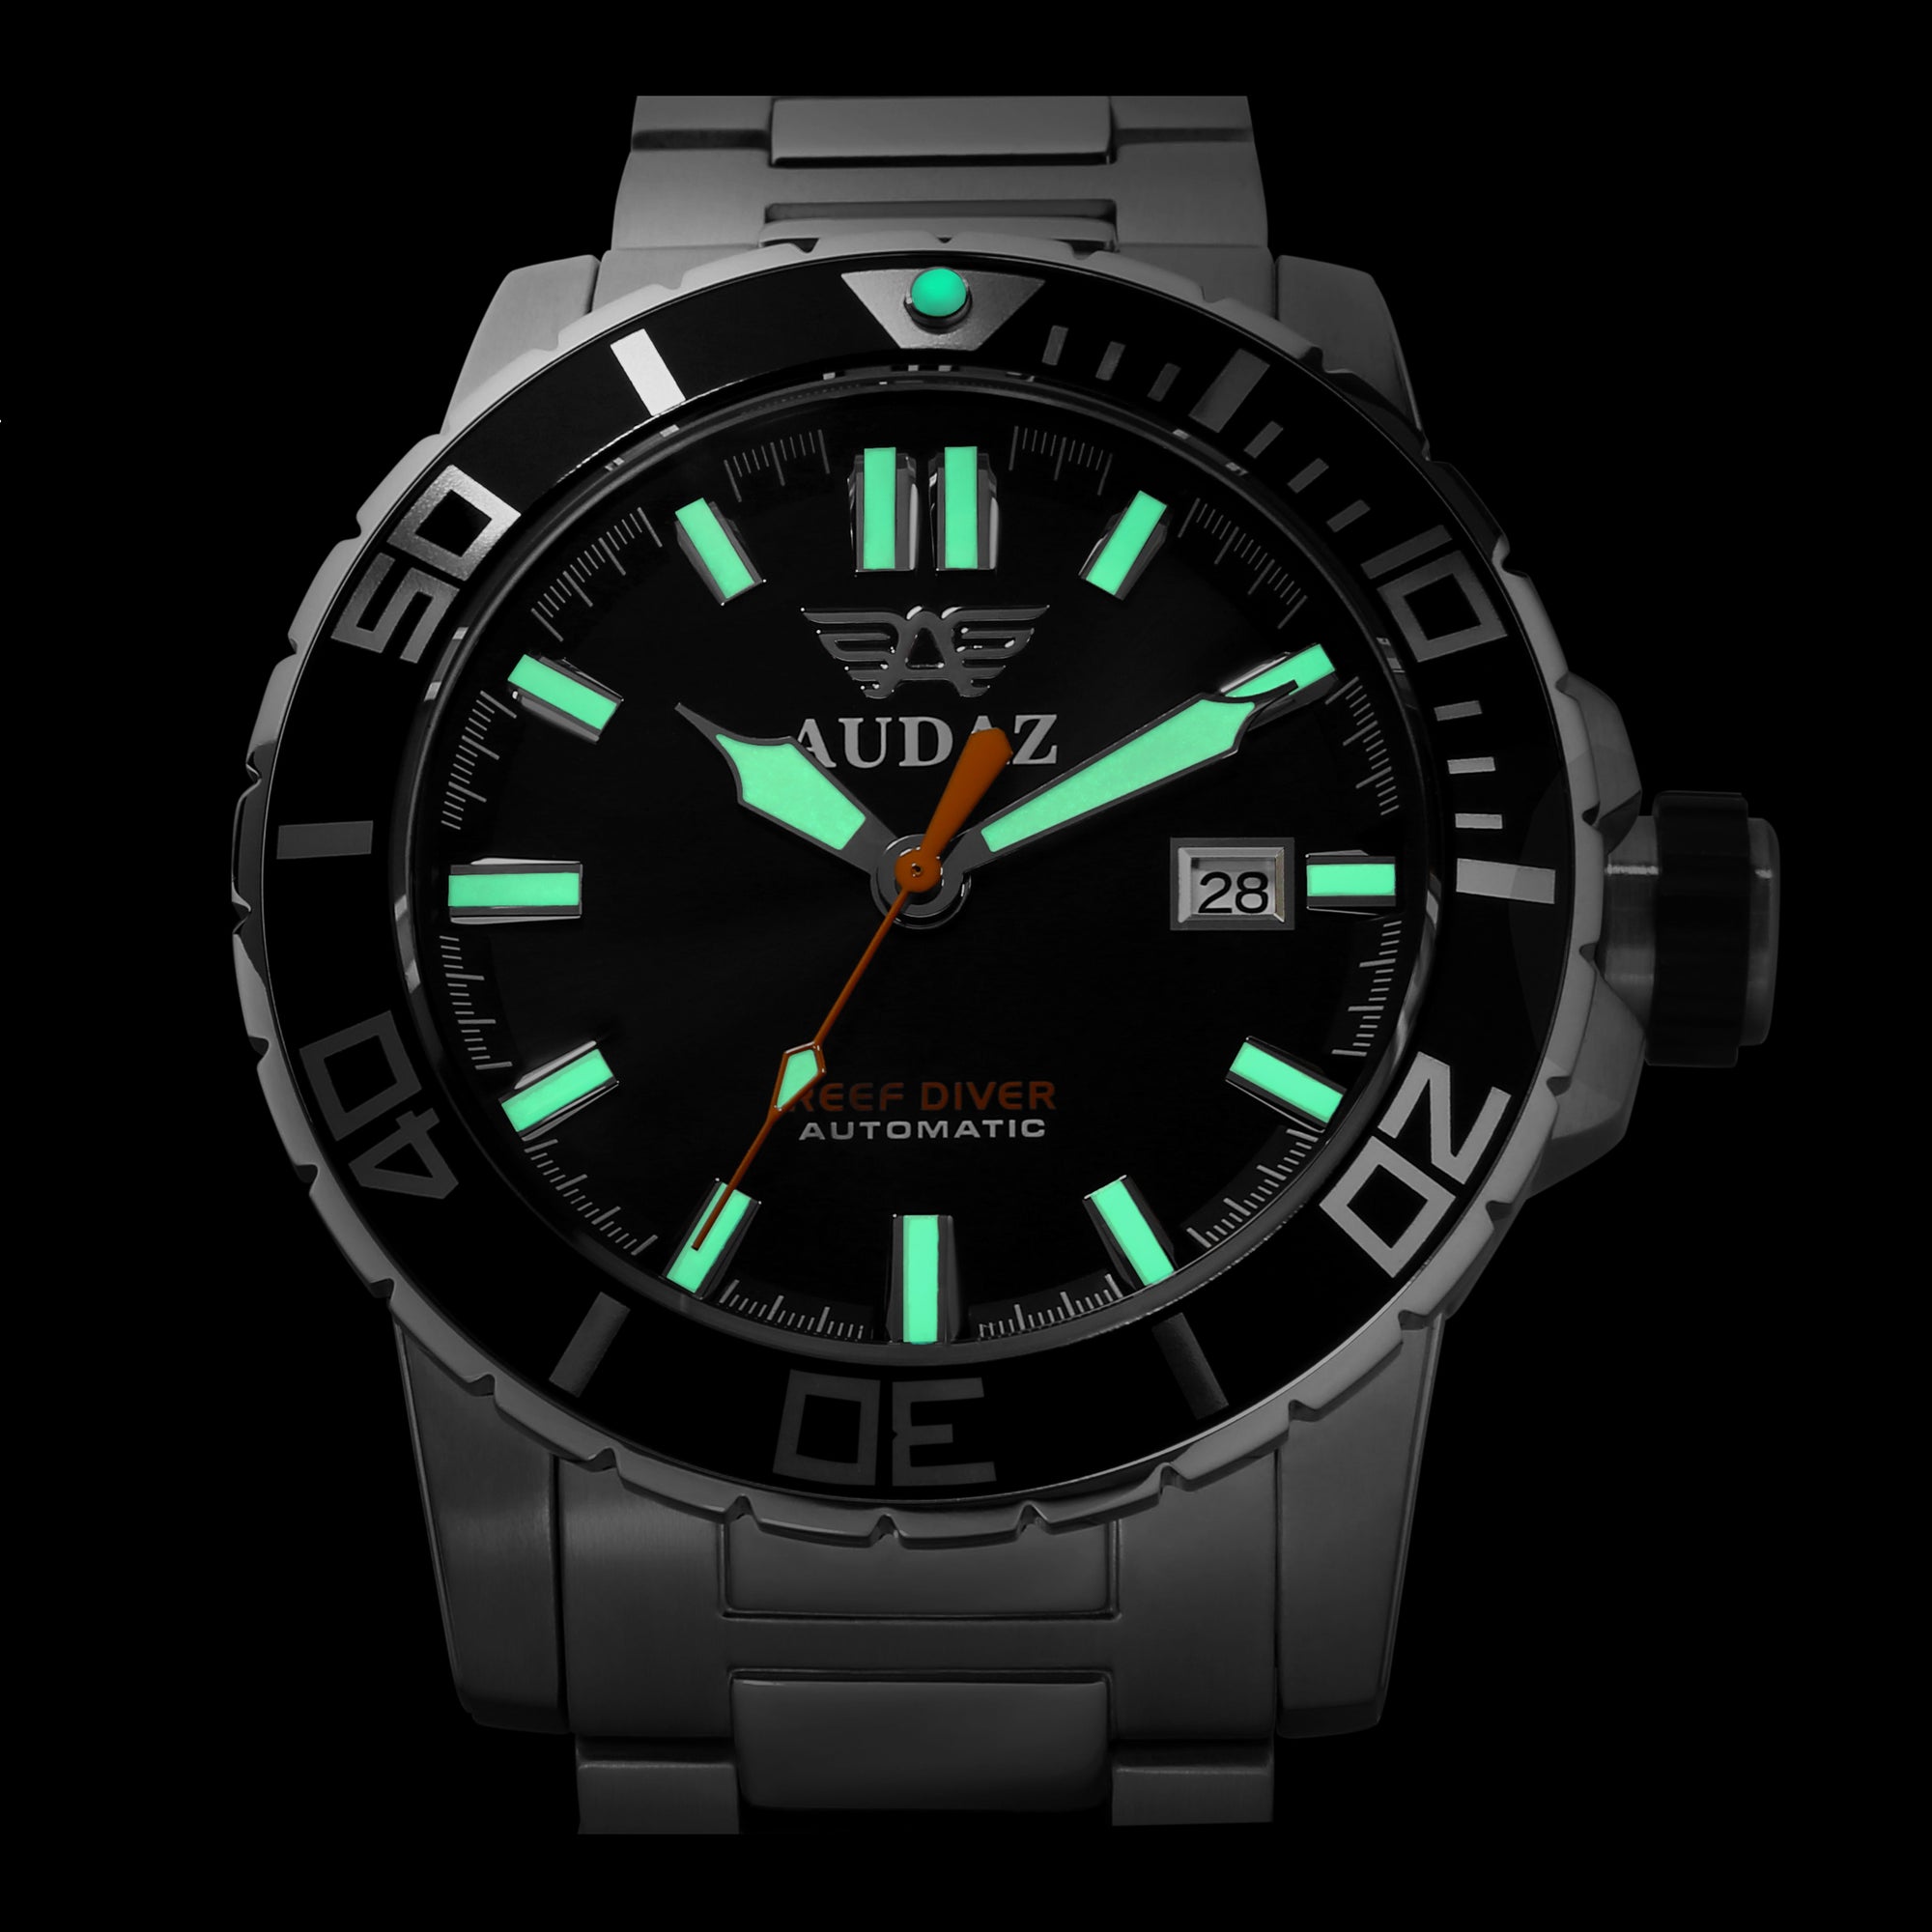 Reef Diver Watches ADZ-2040-03